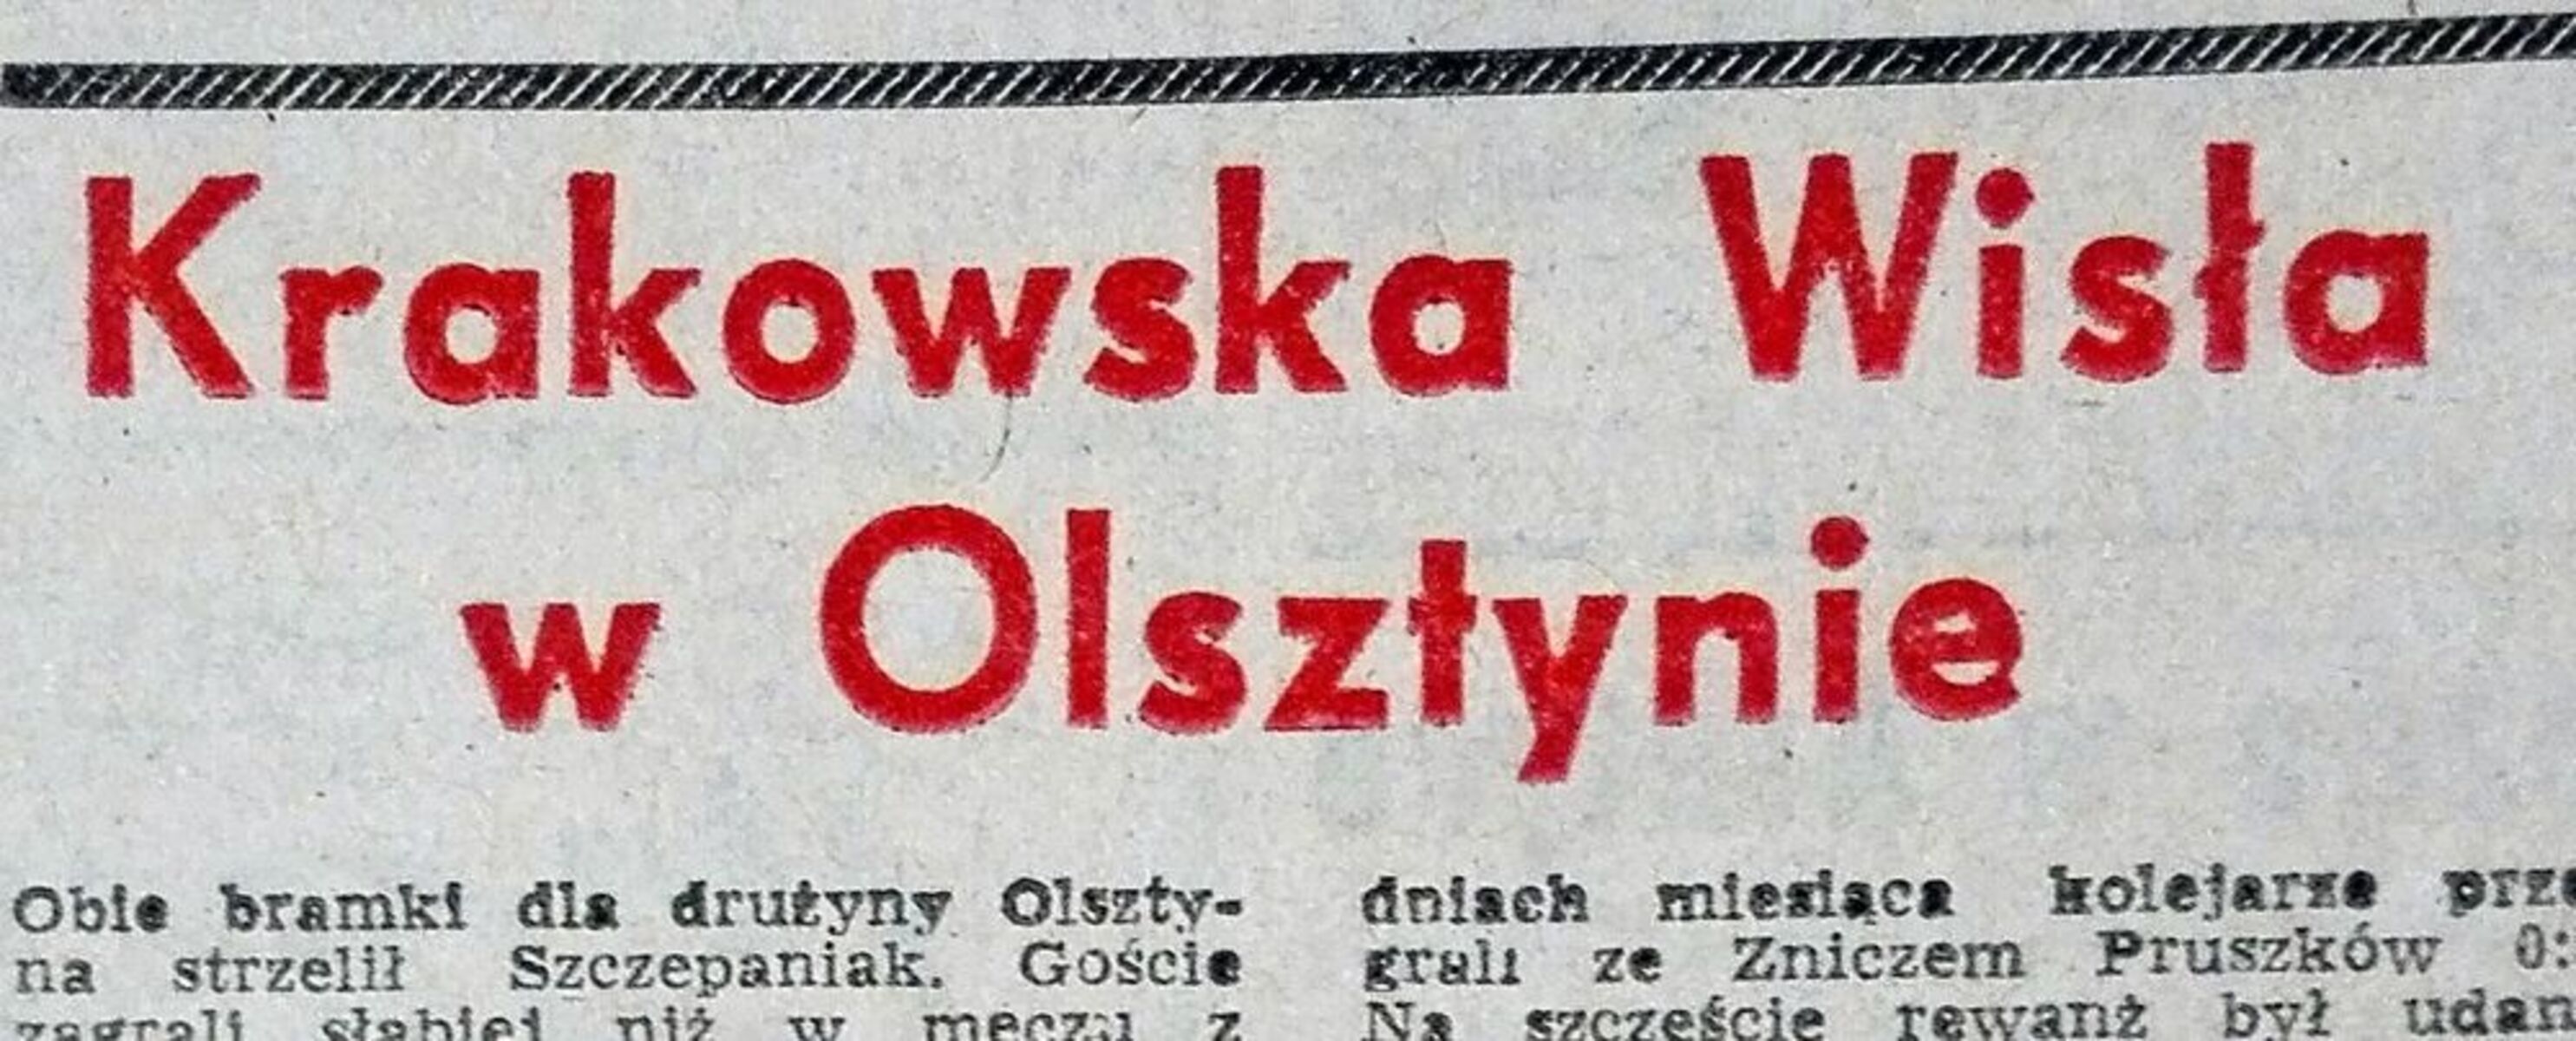 Zdjęcie jest ilustracją do tekstu. Fot. dwadozera.pl